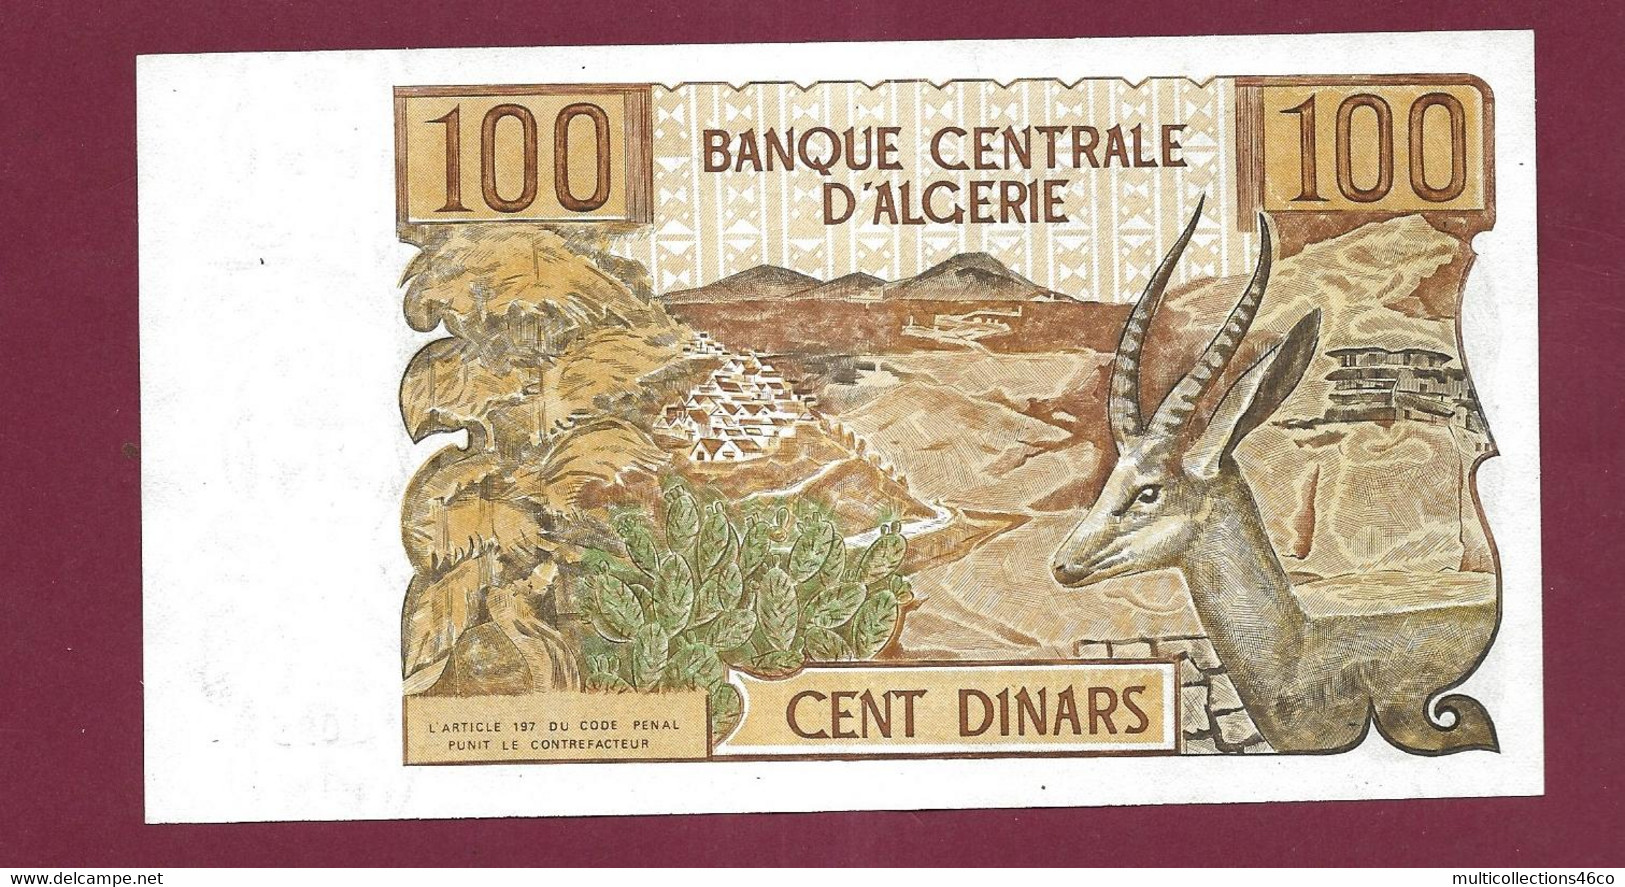 010222 - Billet BANQUE CENTRALE D'ALGERIE Cent 100 Dinars 1-11 - 1970 Neuf - Algérie